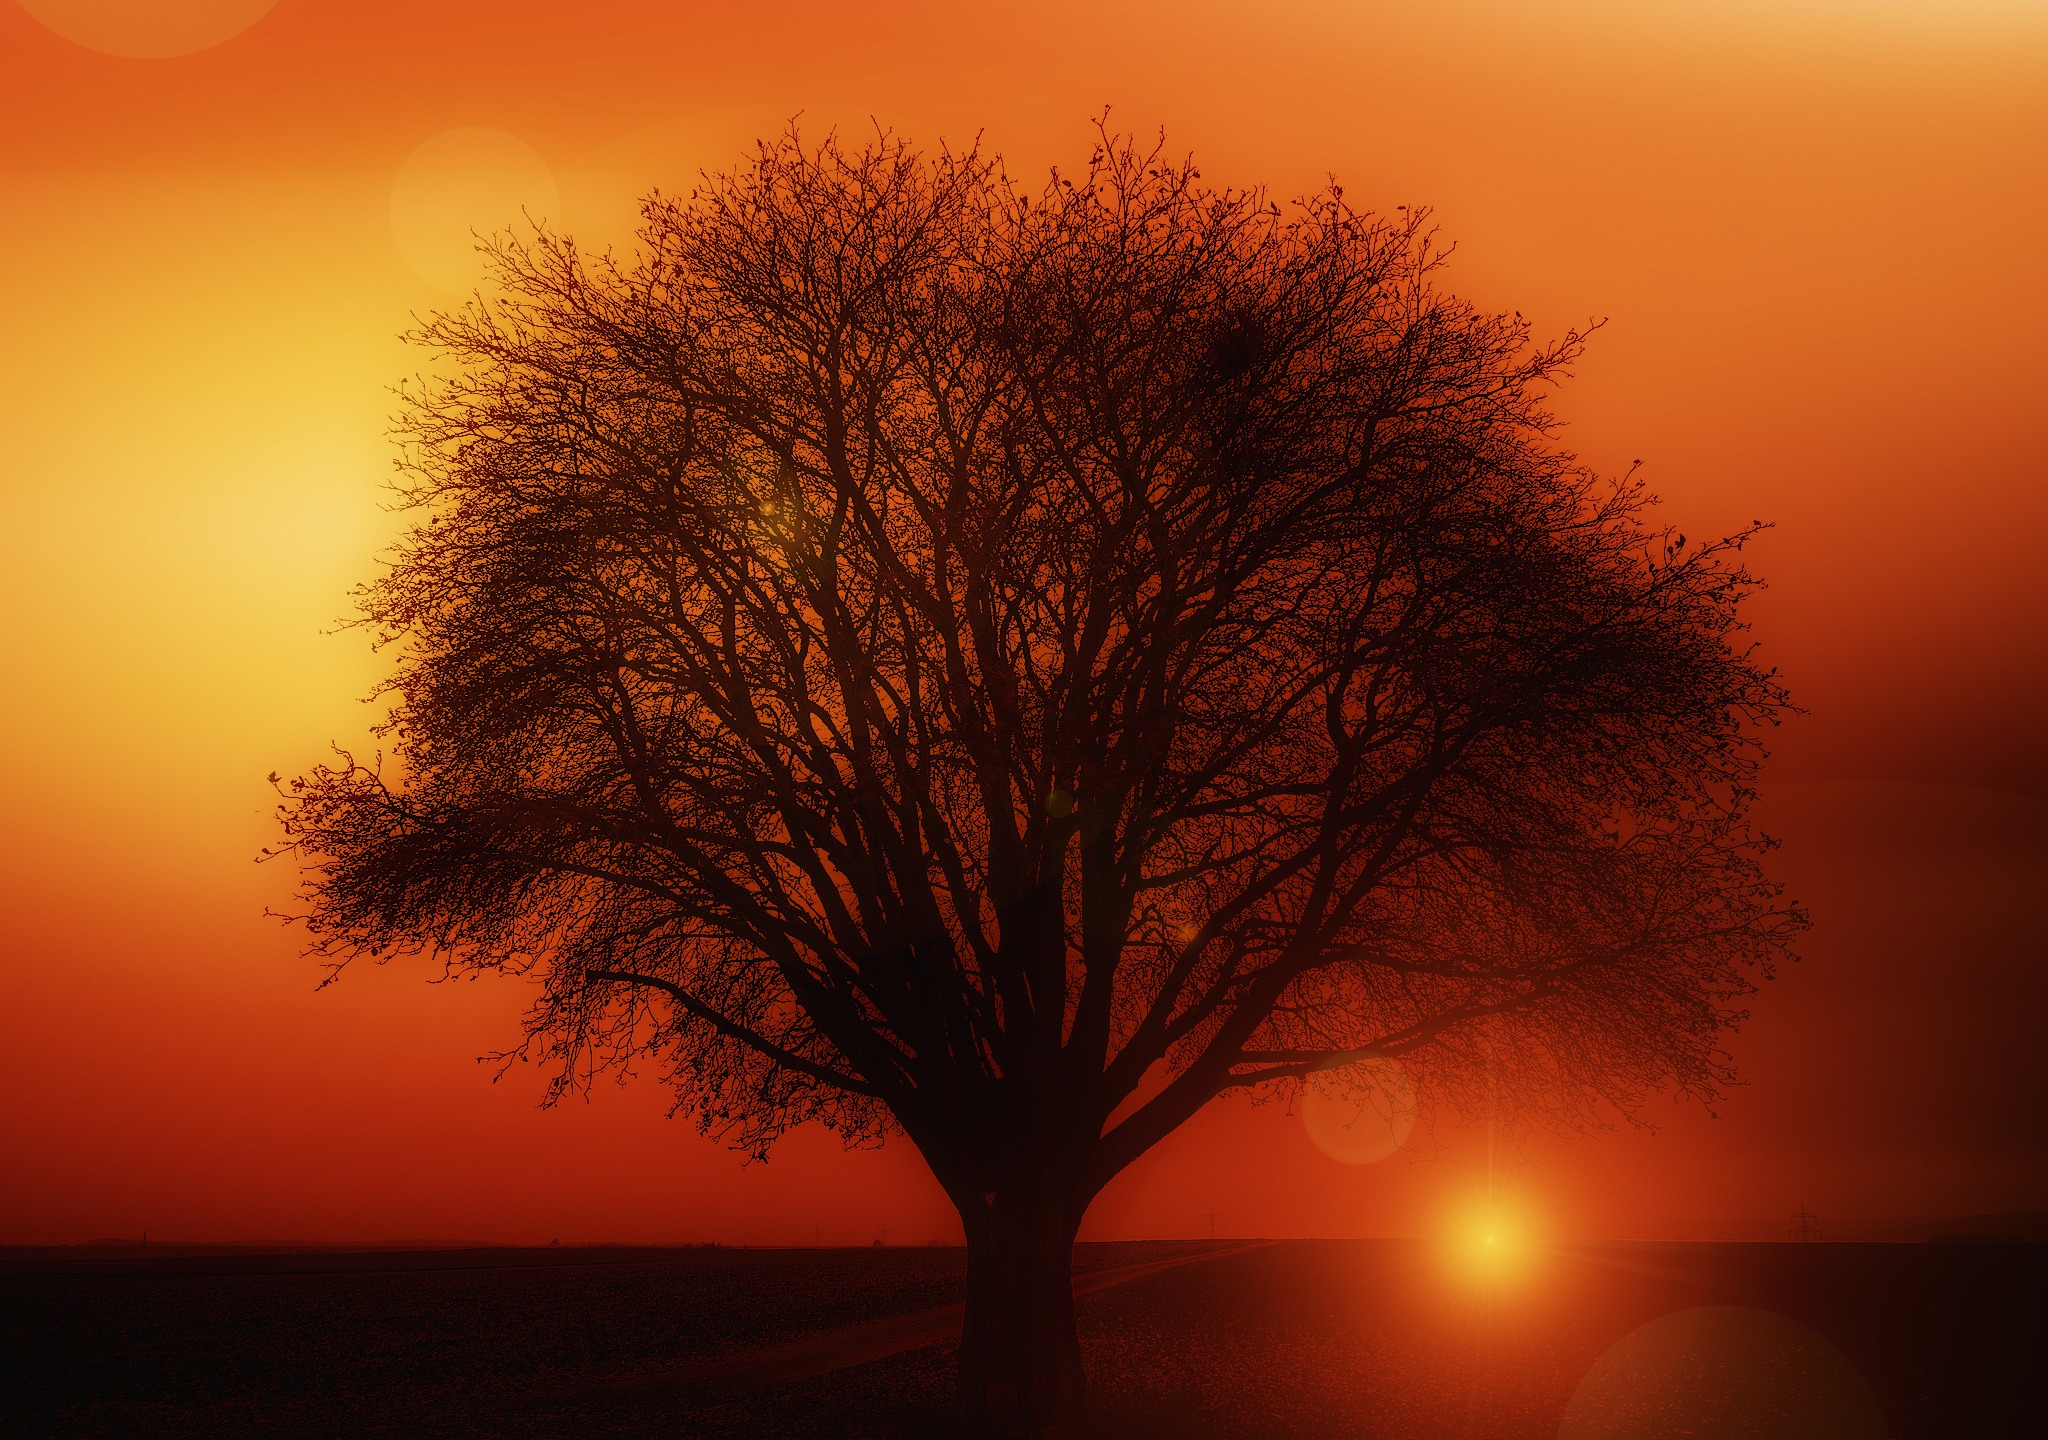 Скачать обои бесплатно Солнце, Силуэт, Дорога, Дерево, Земля/природа, Закат Солнца, Оранжевый Цвет) картинка на рабочий стол ПК